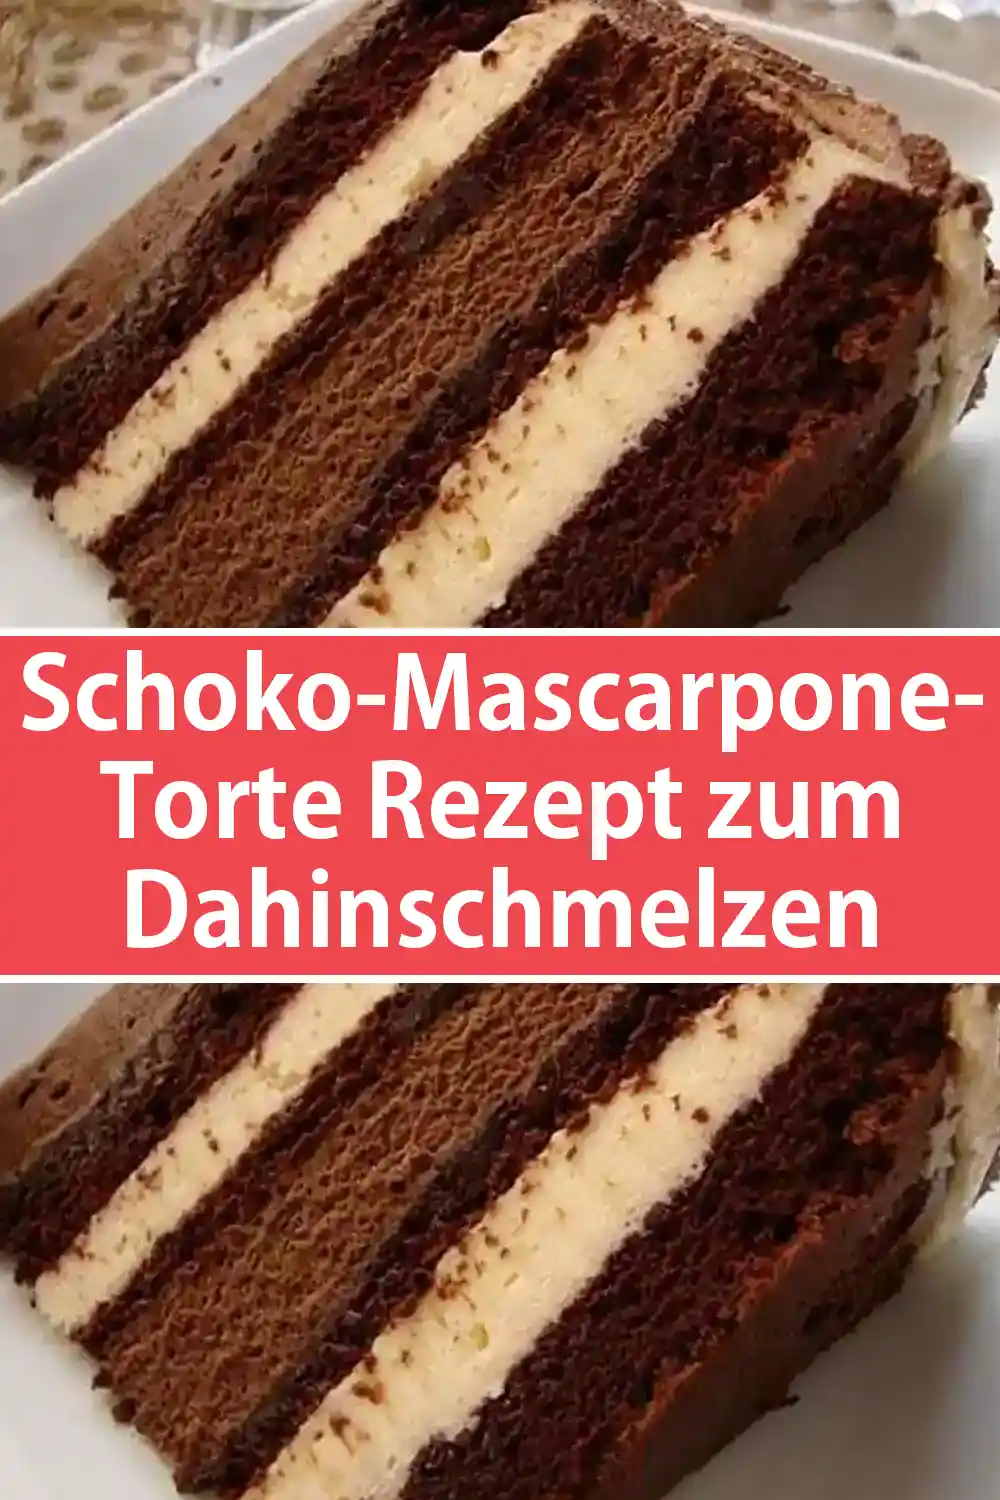 Schoko-Mascarpone-Torte Rezept zum Dahinschmelzen